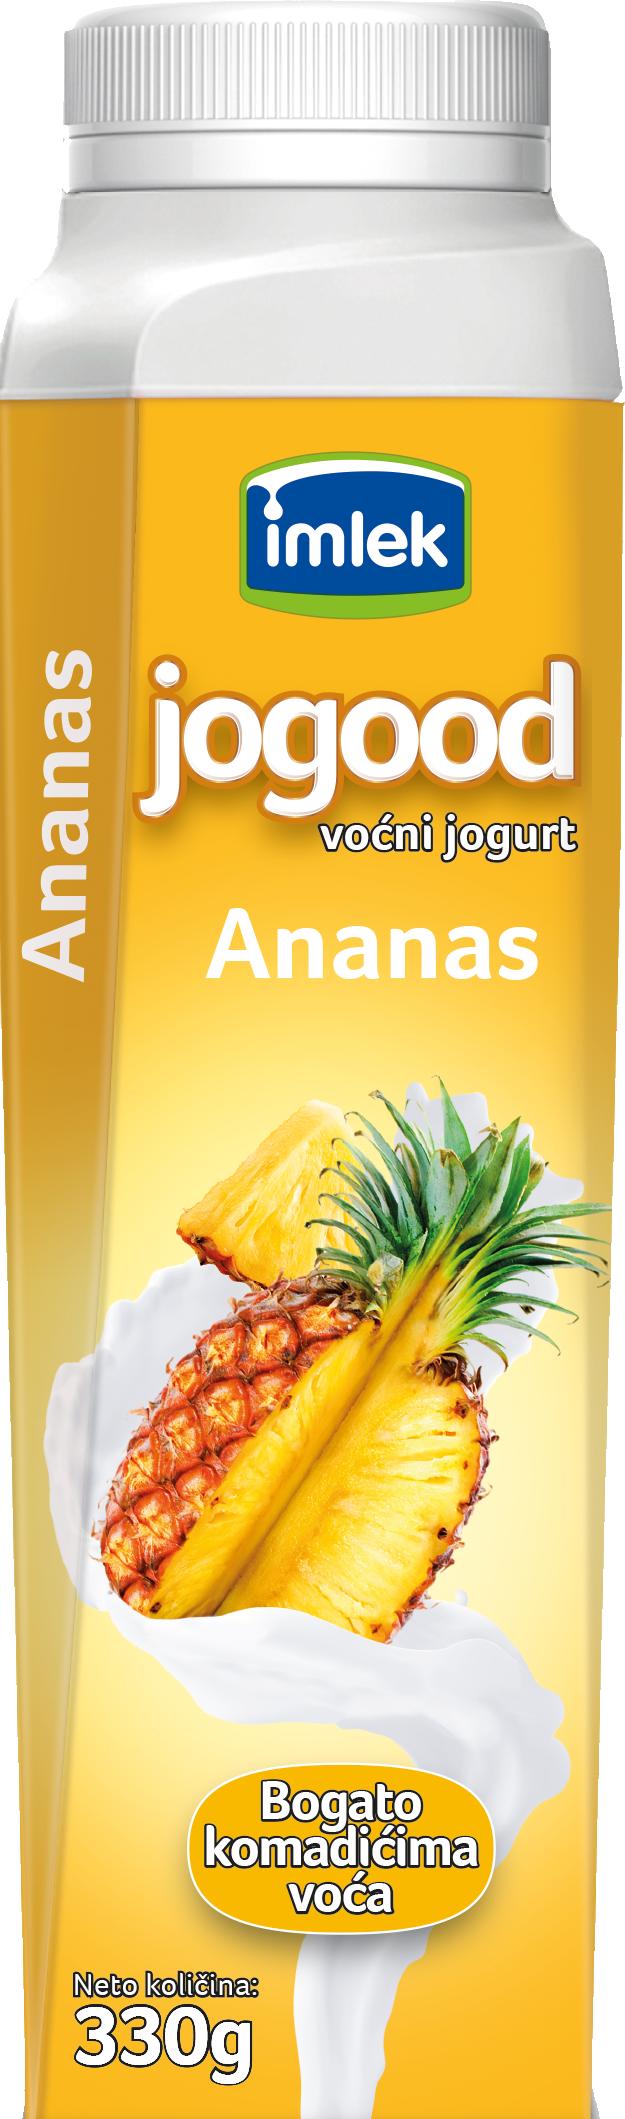 Slika za Voćni jogurt Jogood ananas 330g